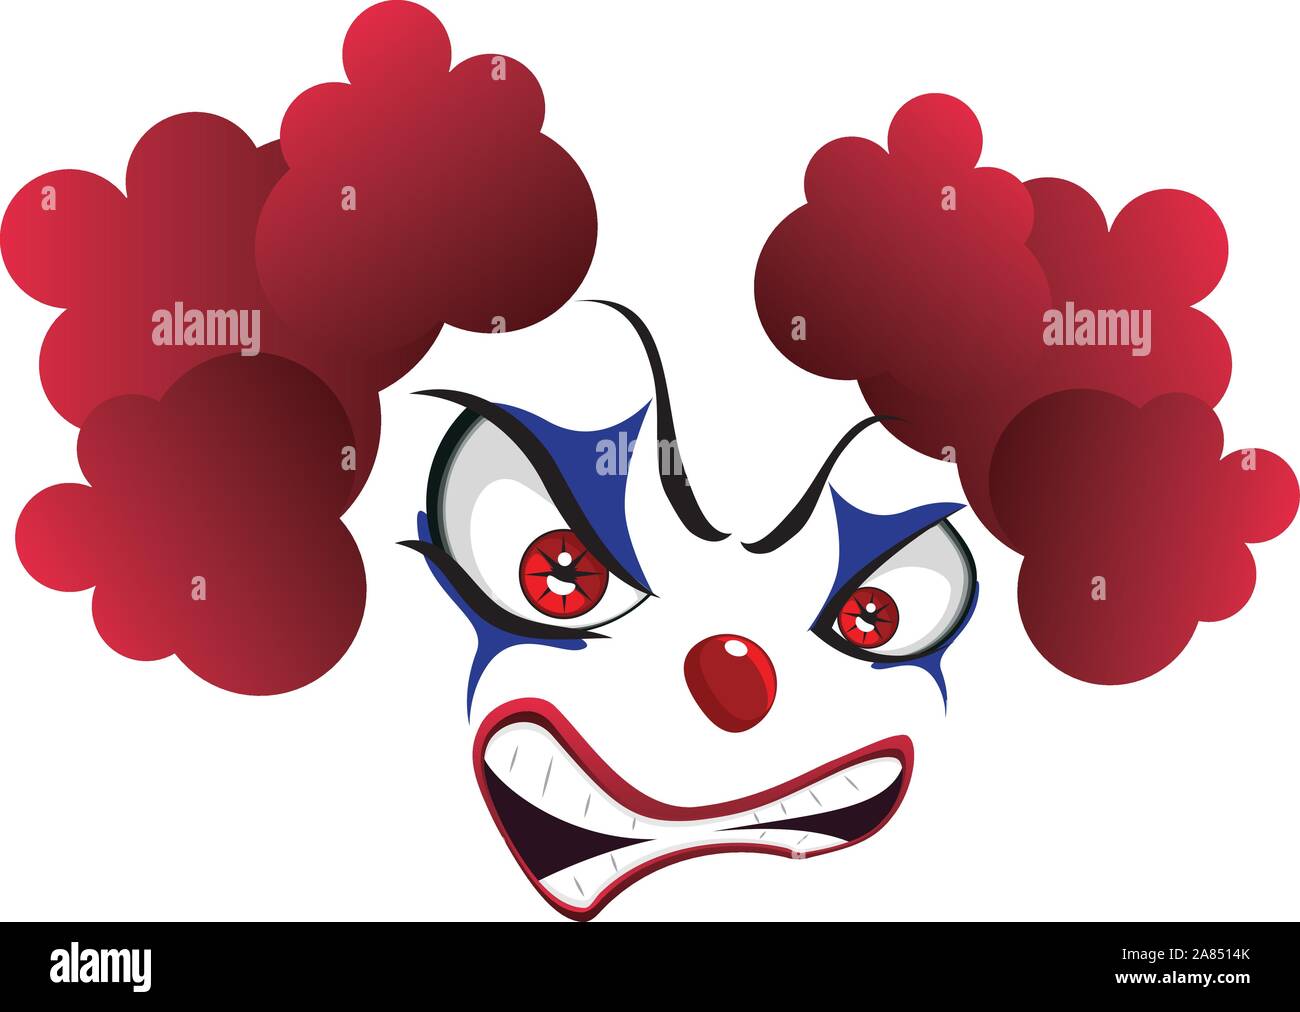 Cartoon creepy evil clown face for Halloween. Stock Vector